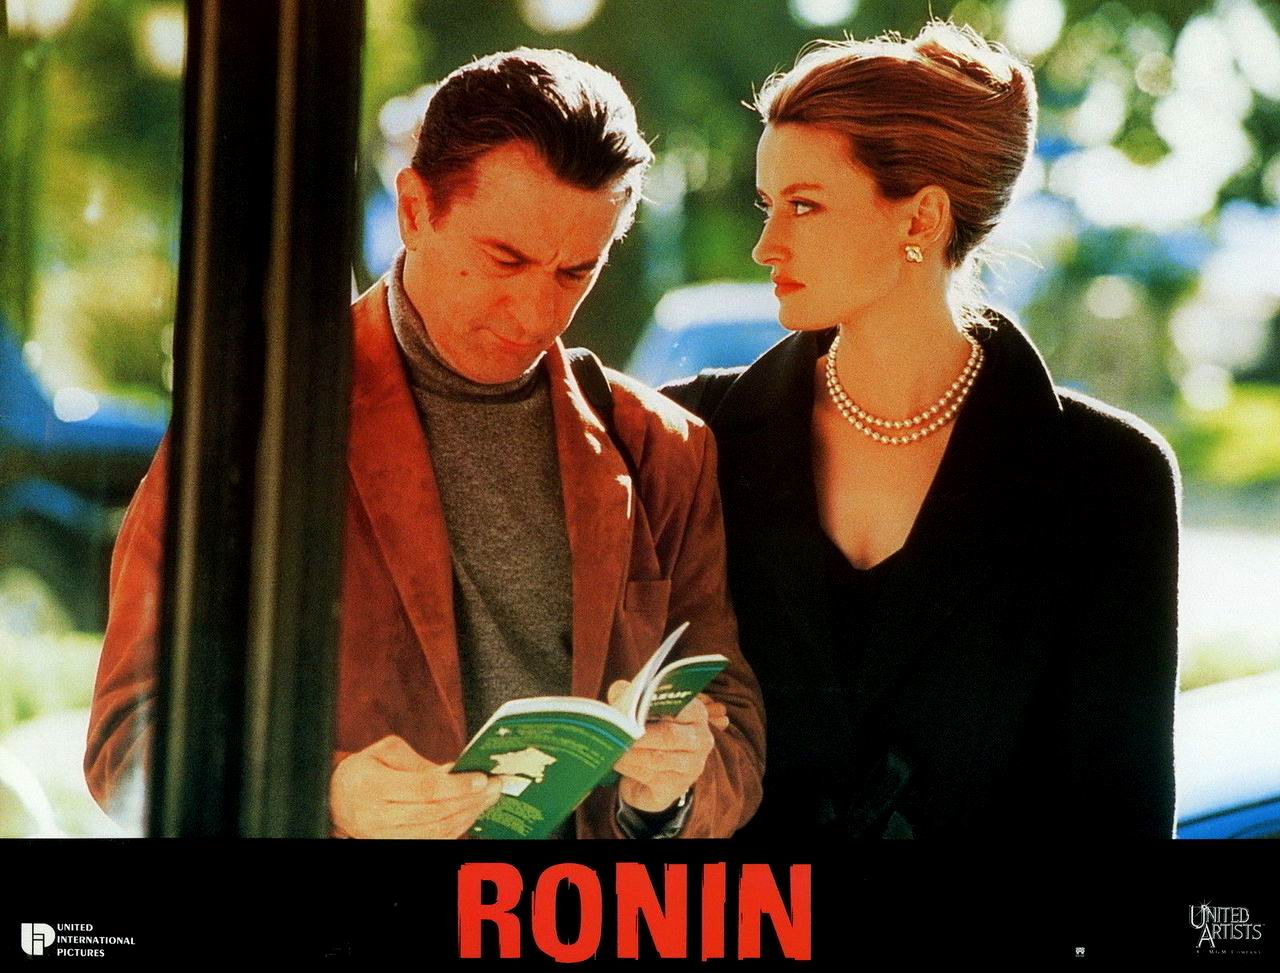 Ronin (1998) John Frankenheimer - Ronin (03.11.1997 / 03.03.1998)